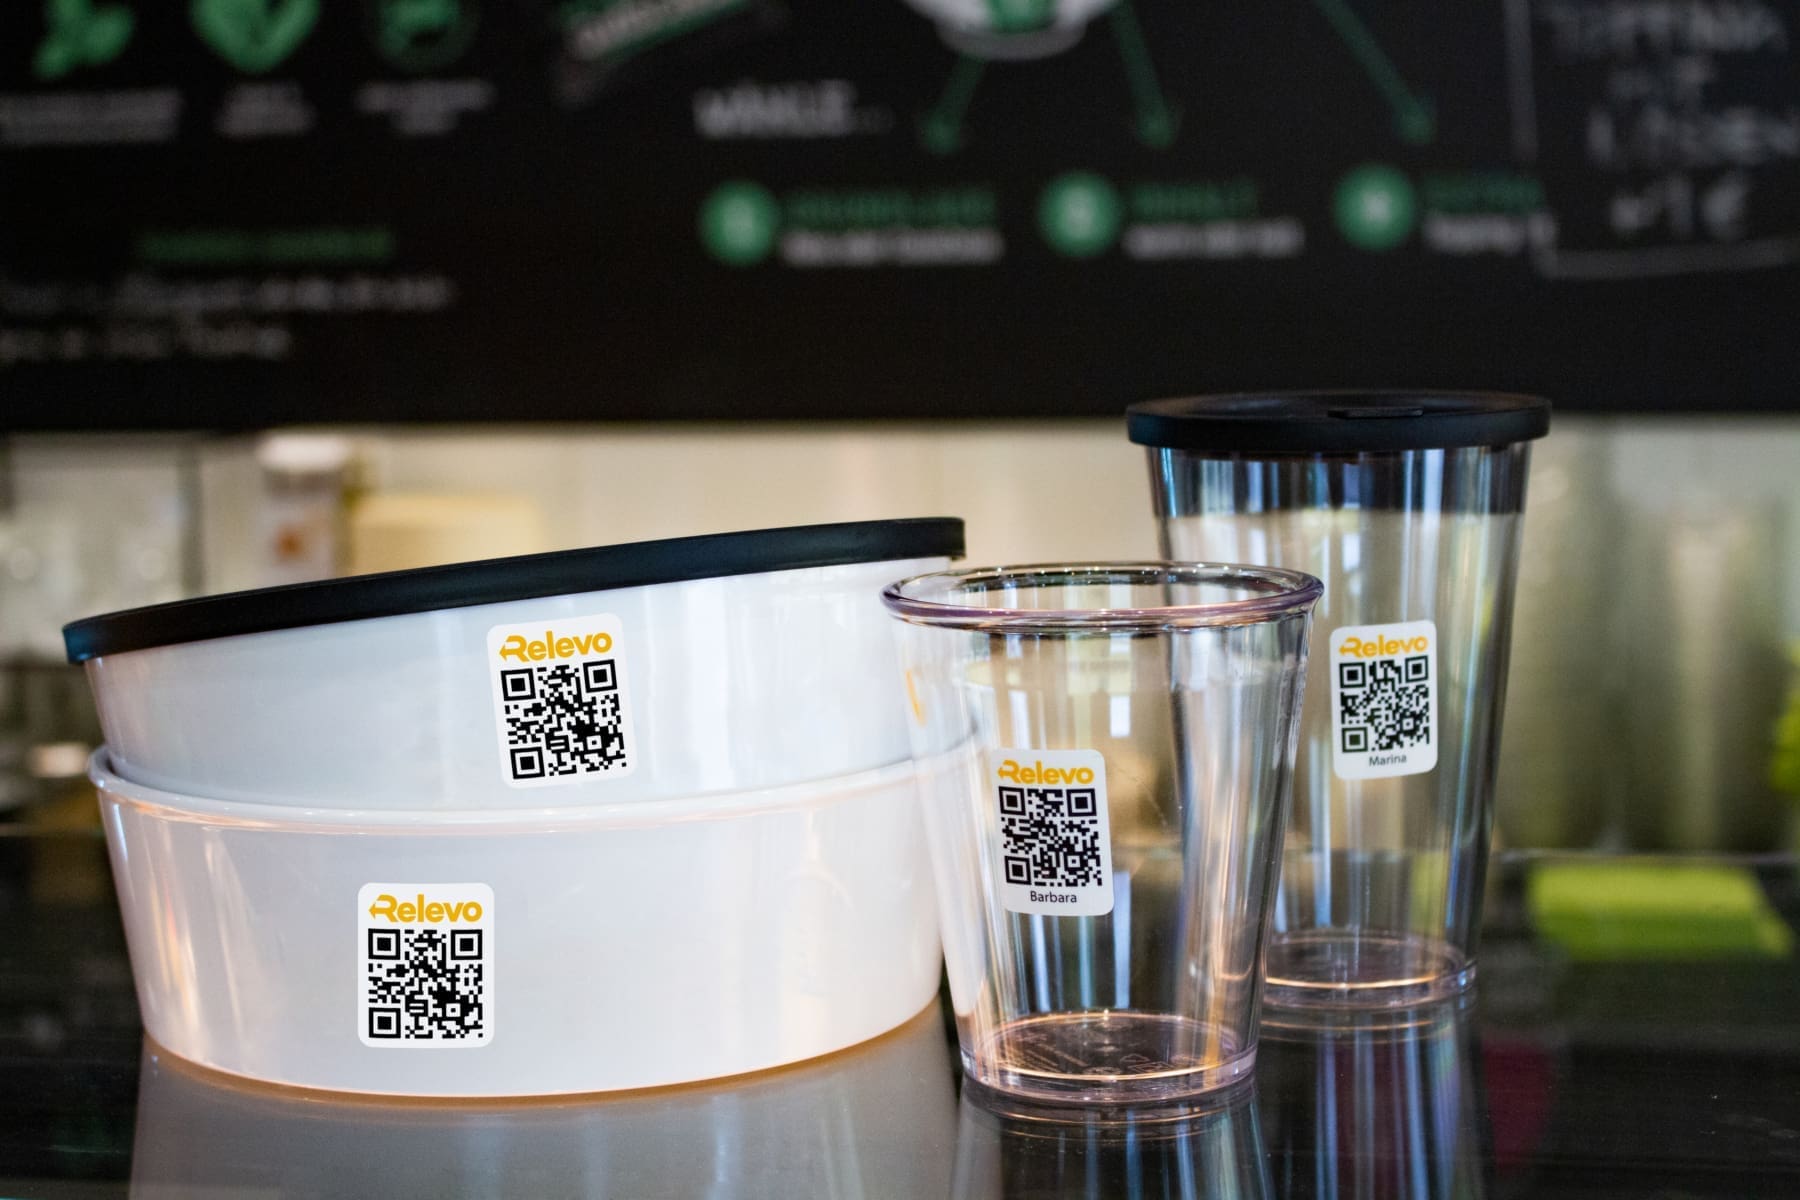 Aktuell bietet Relevo Mehrweg-Cups und Bowls an, die sich für verschiedene Getränke und Speisen eignen.